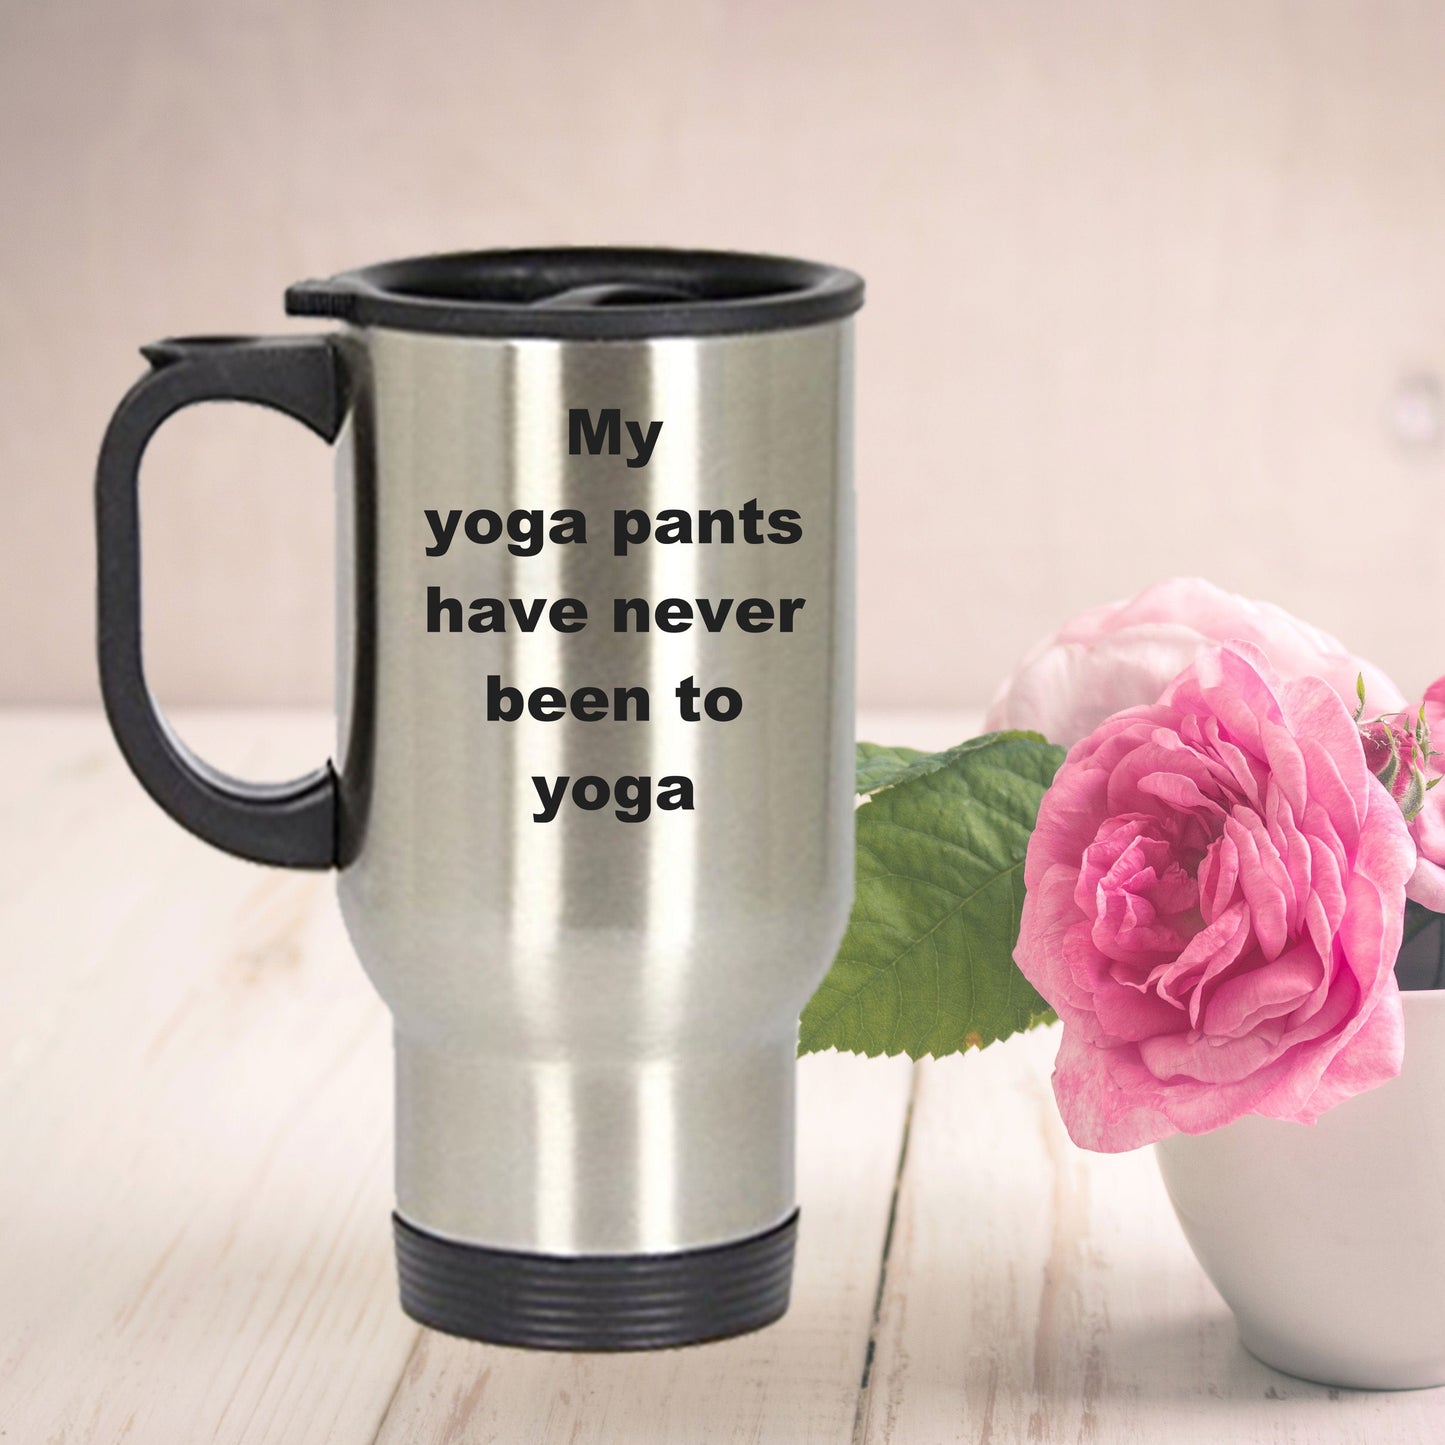 Funny Yoga Travel Mug - My Yoga pants have never been to Yoga